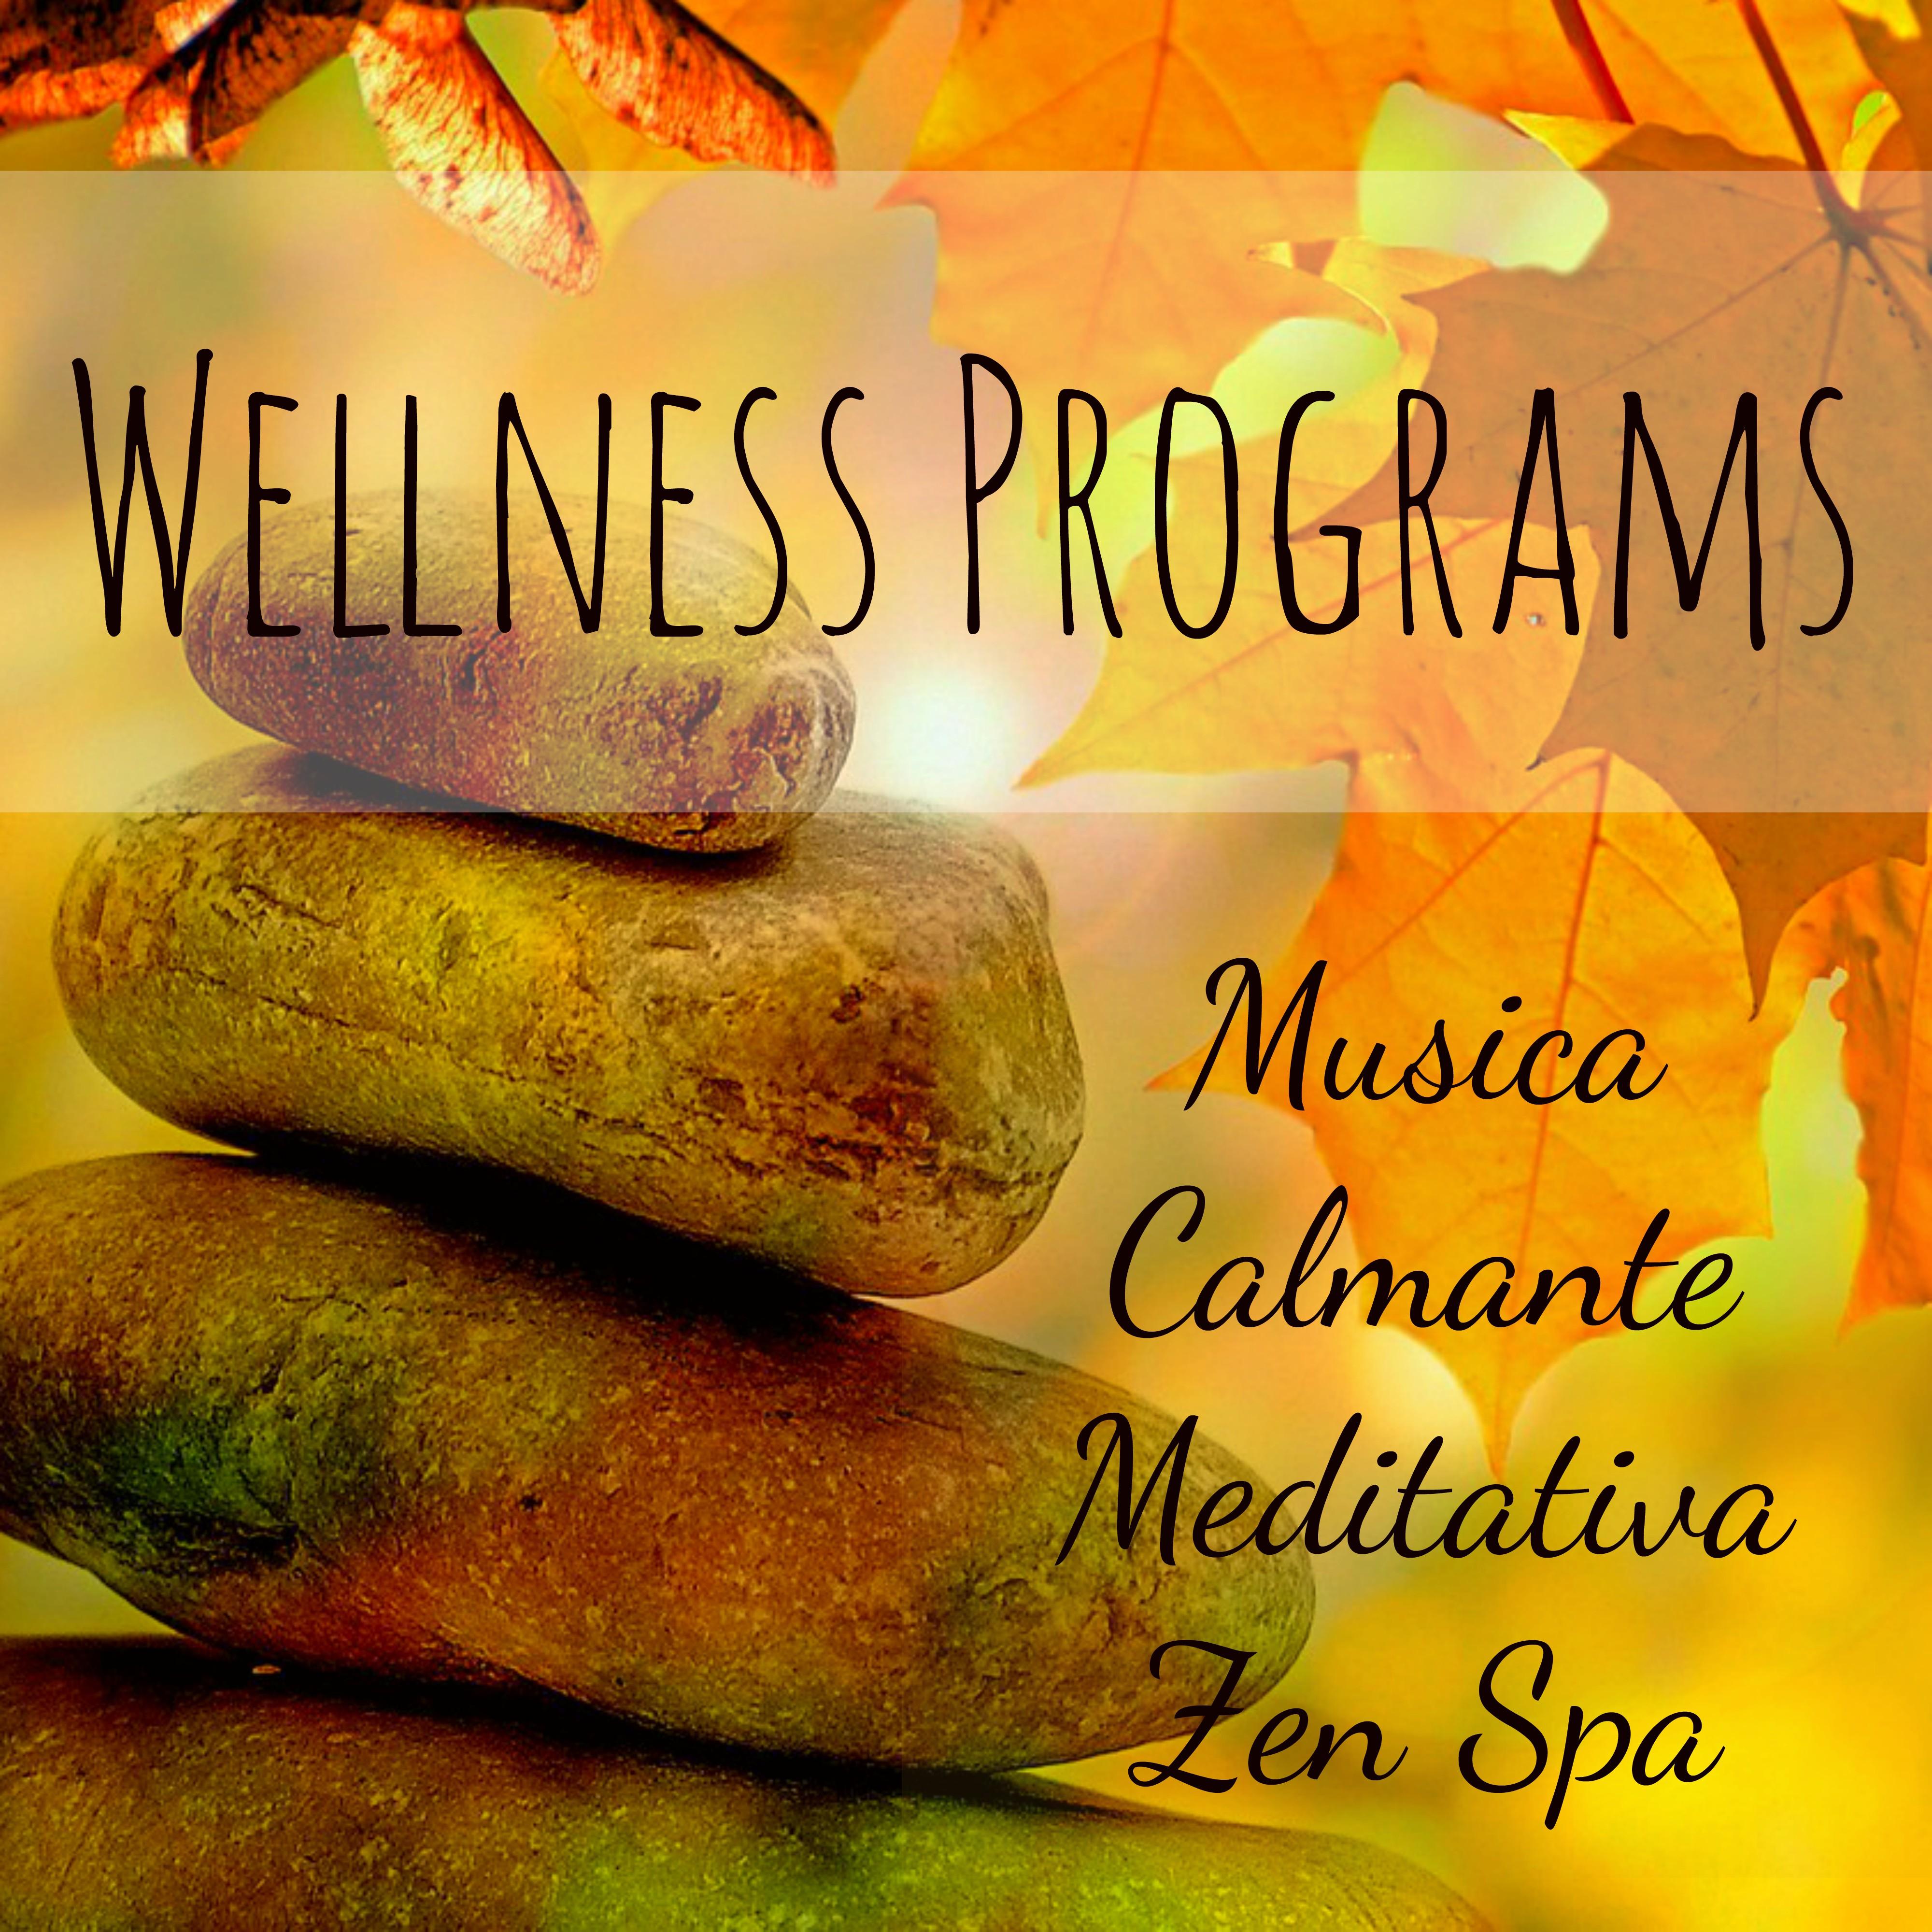 Wellness Programs - Musica Calmante Meditativa Zen Spa per Training Autogeno Tecniche di Rilassamento con Suoni della Natura Tradizionali Strumentali